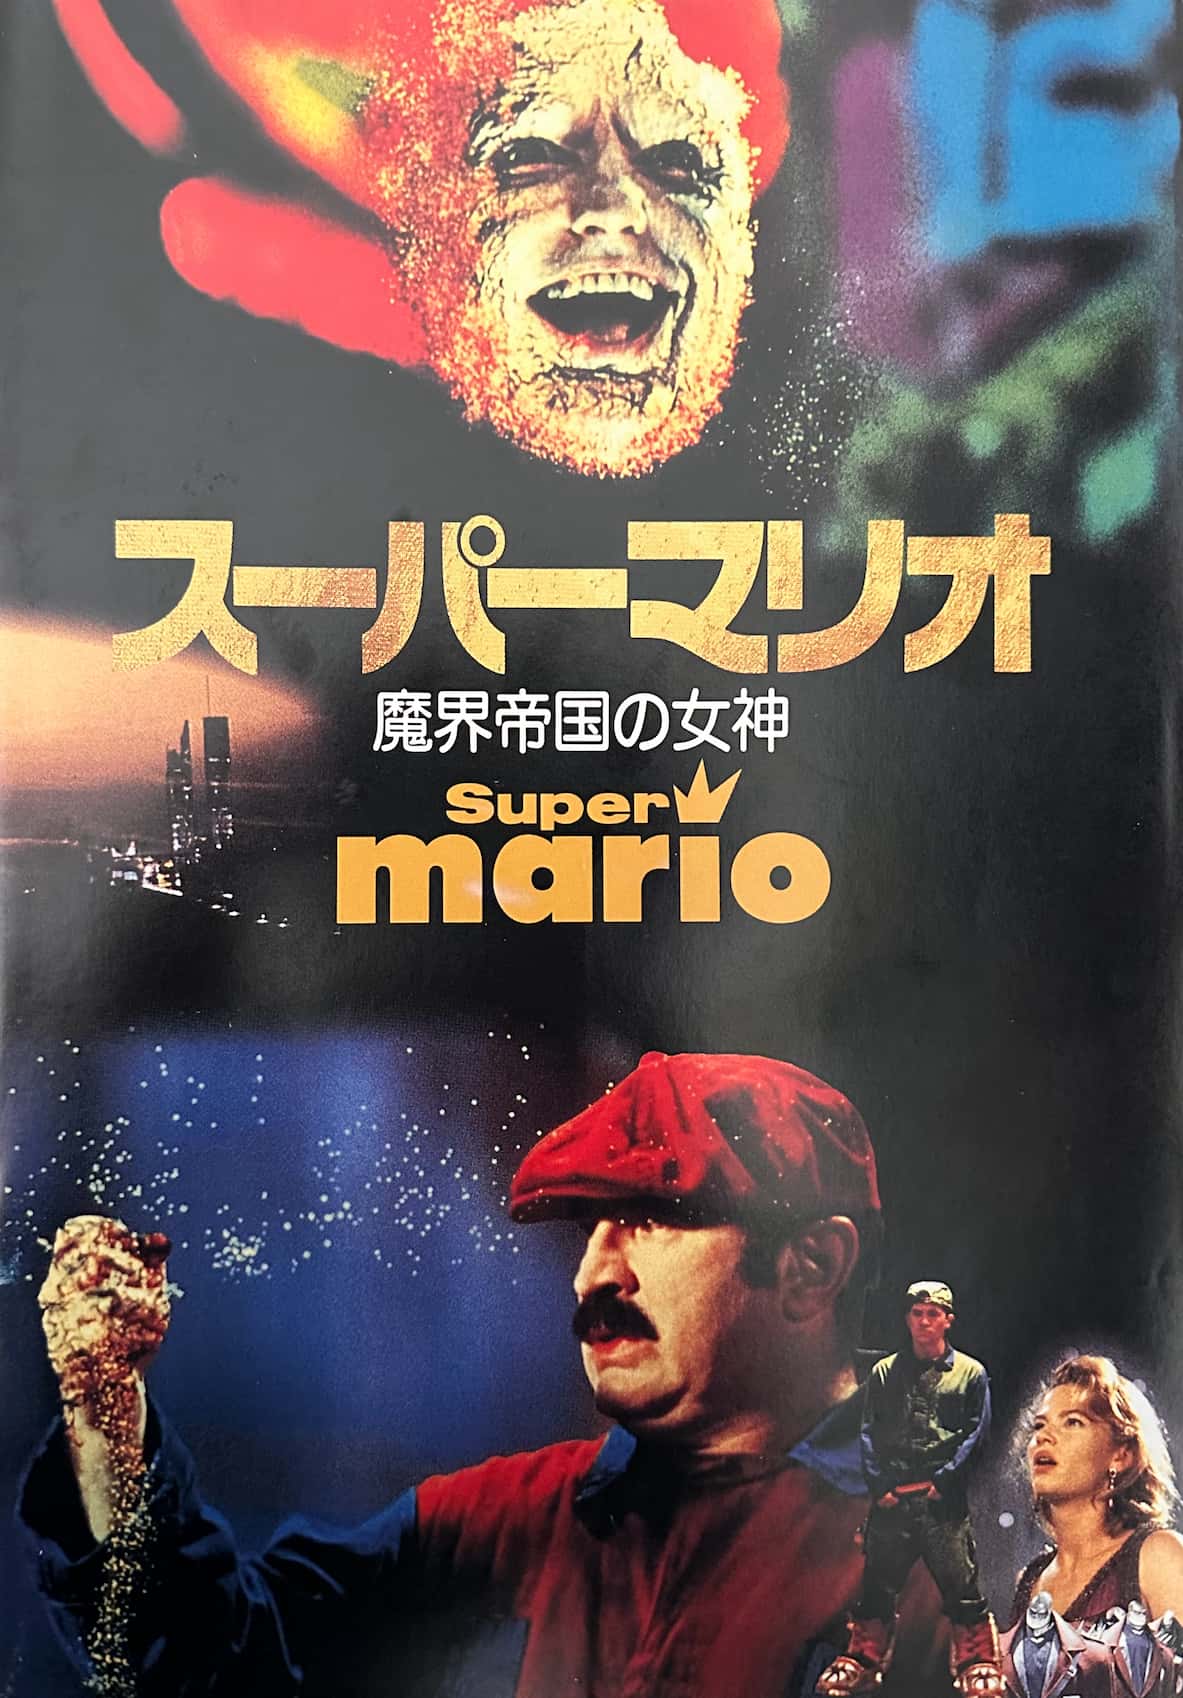 スーパーマリオブラザーズ1993年日本劇場パンフレットの表紙